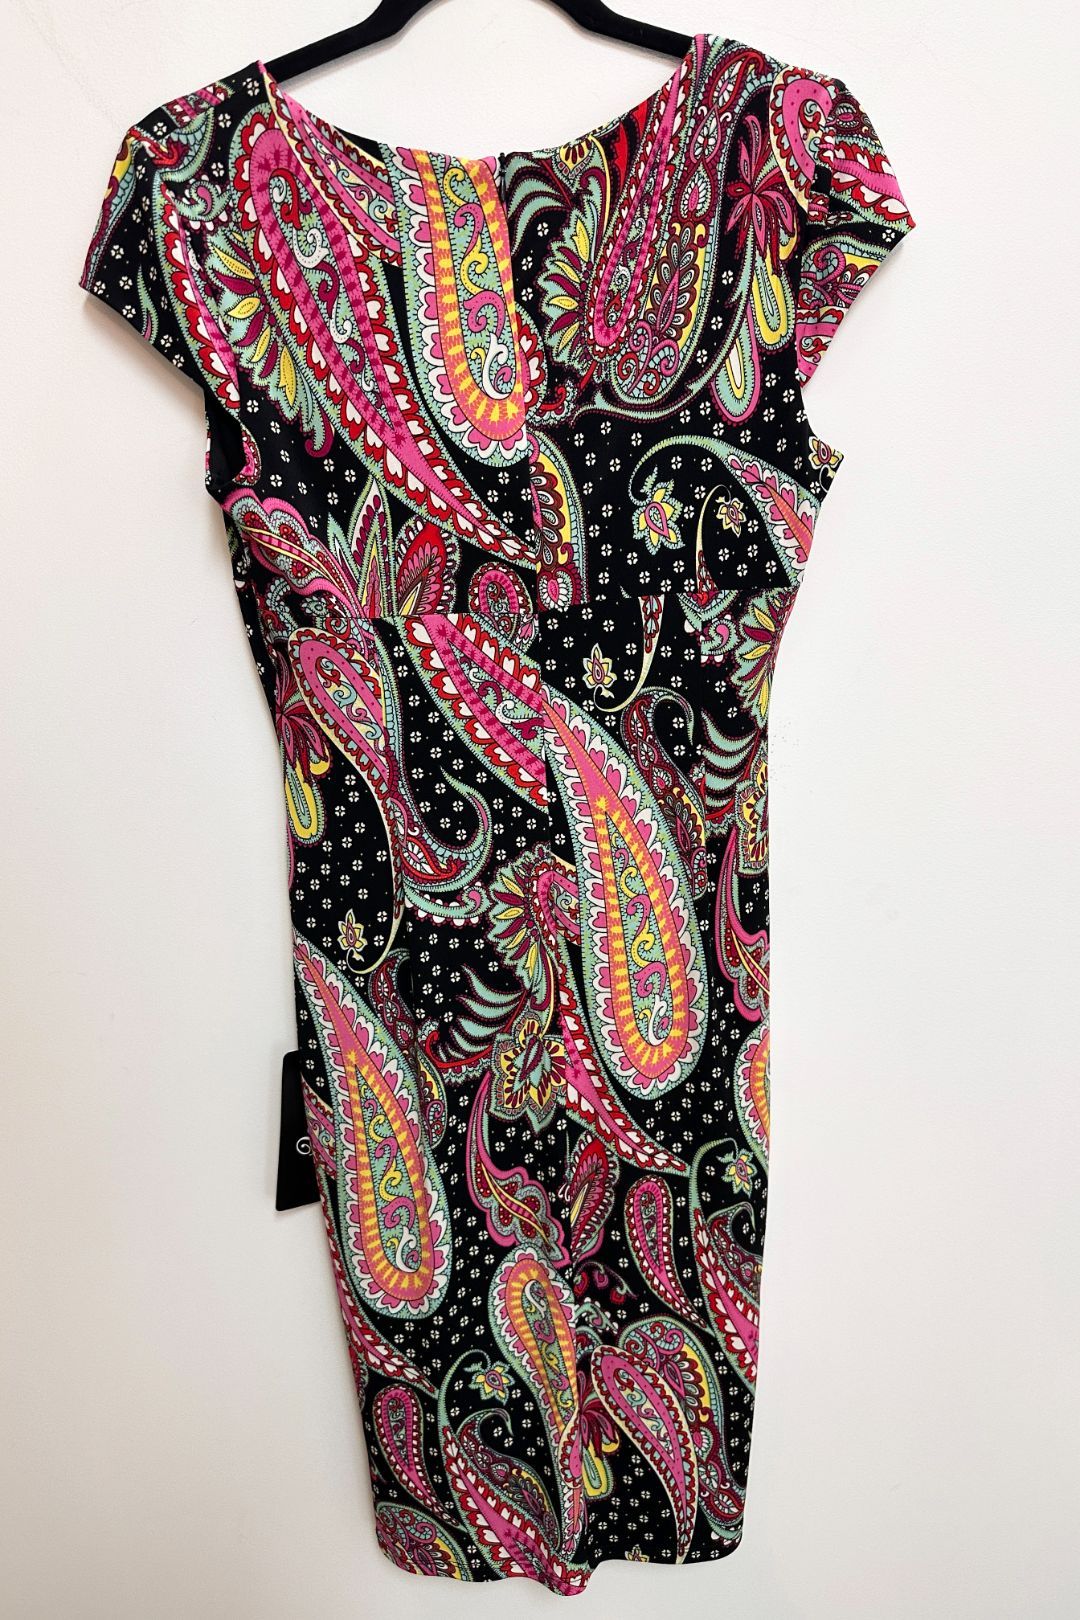 Anthea Crawford - Malibu Paisley Print Dress